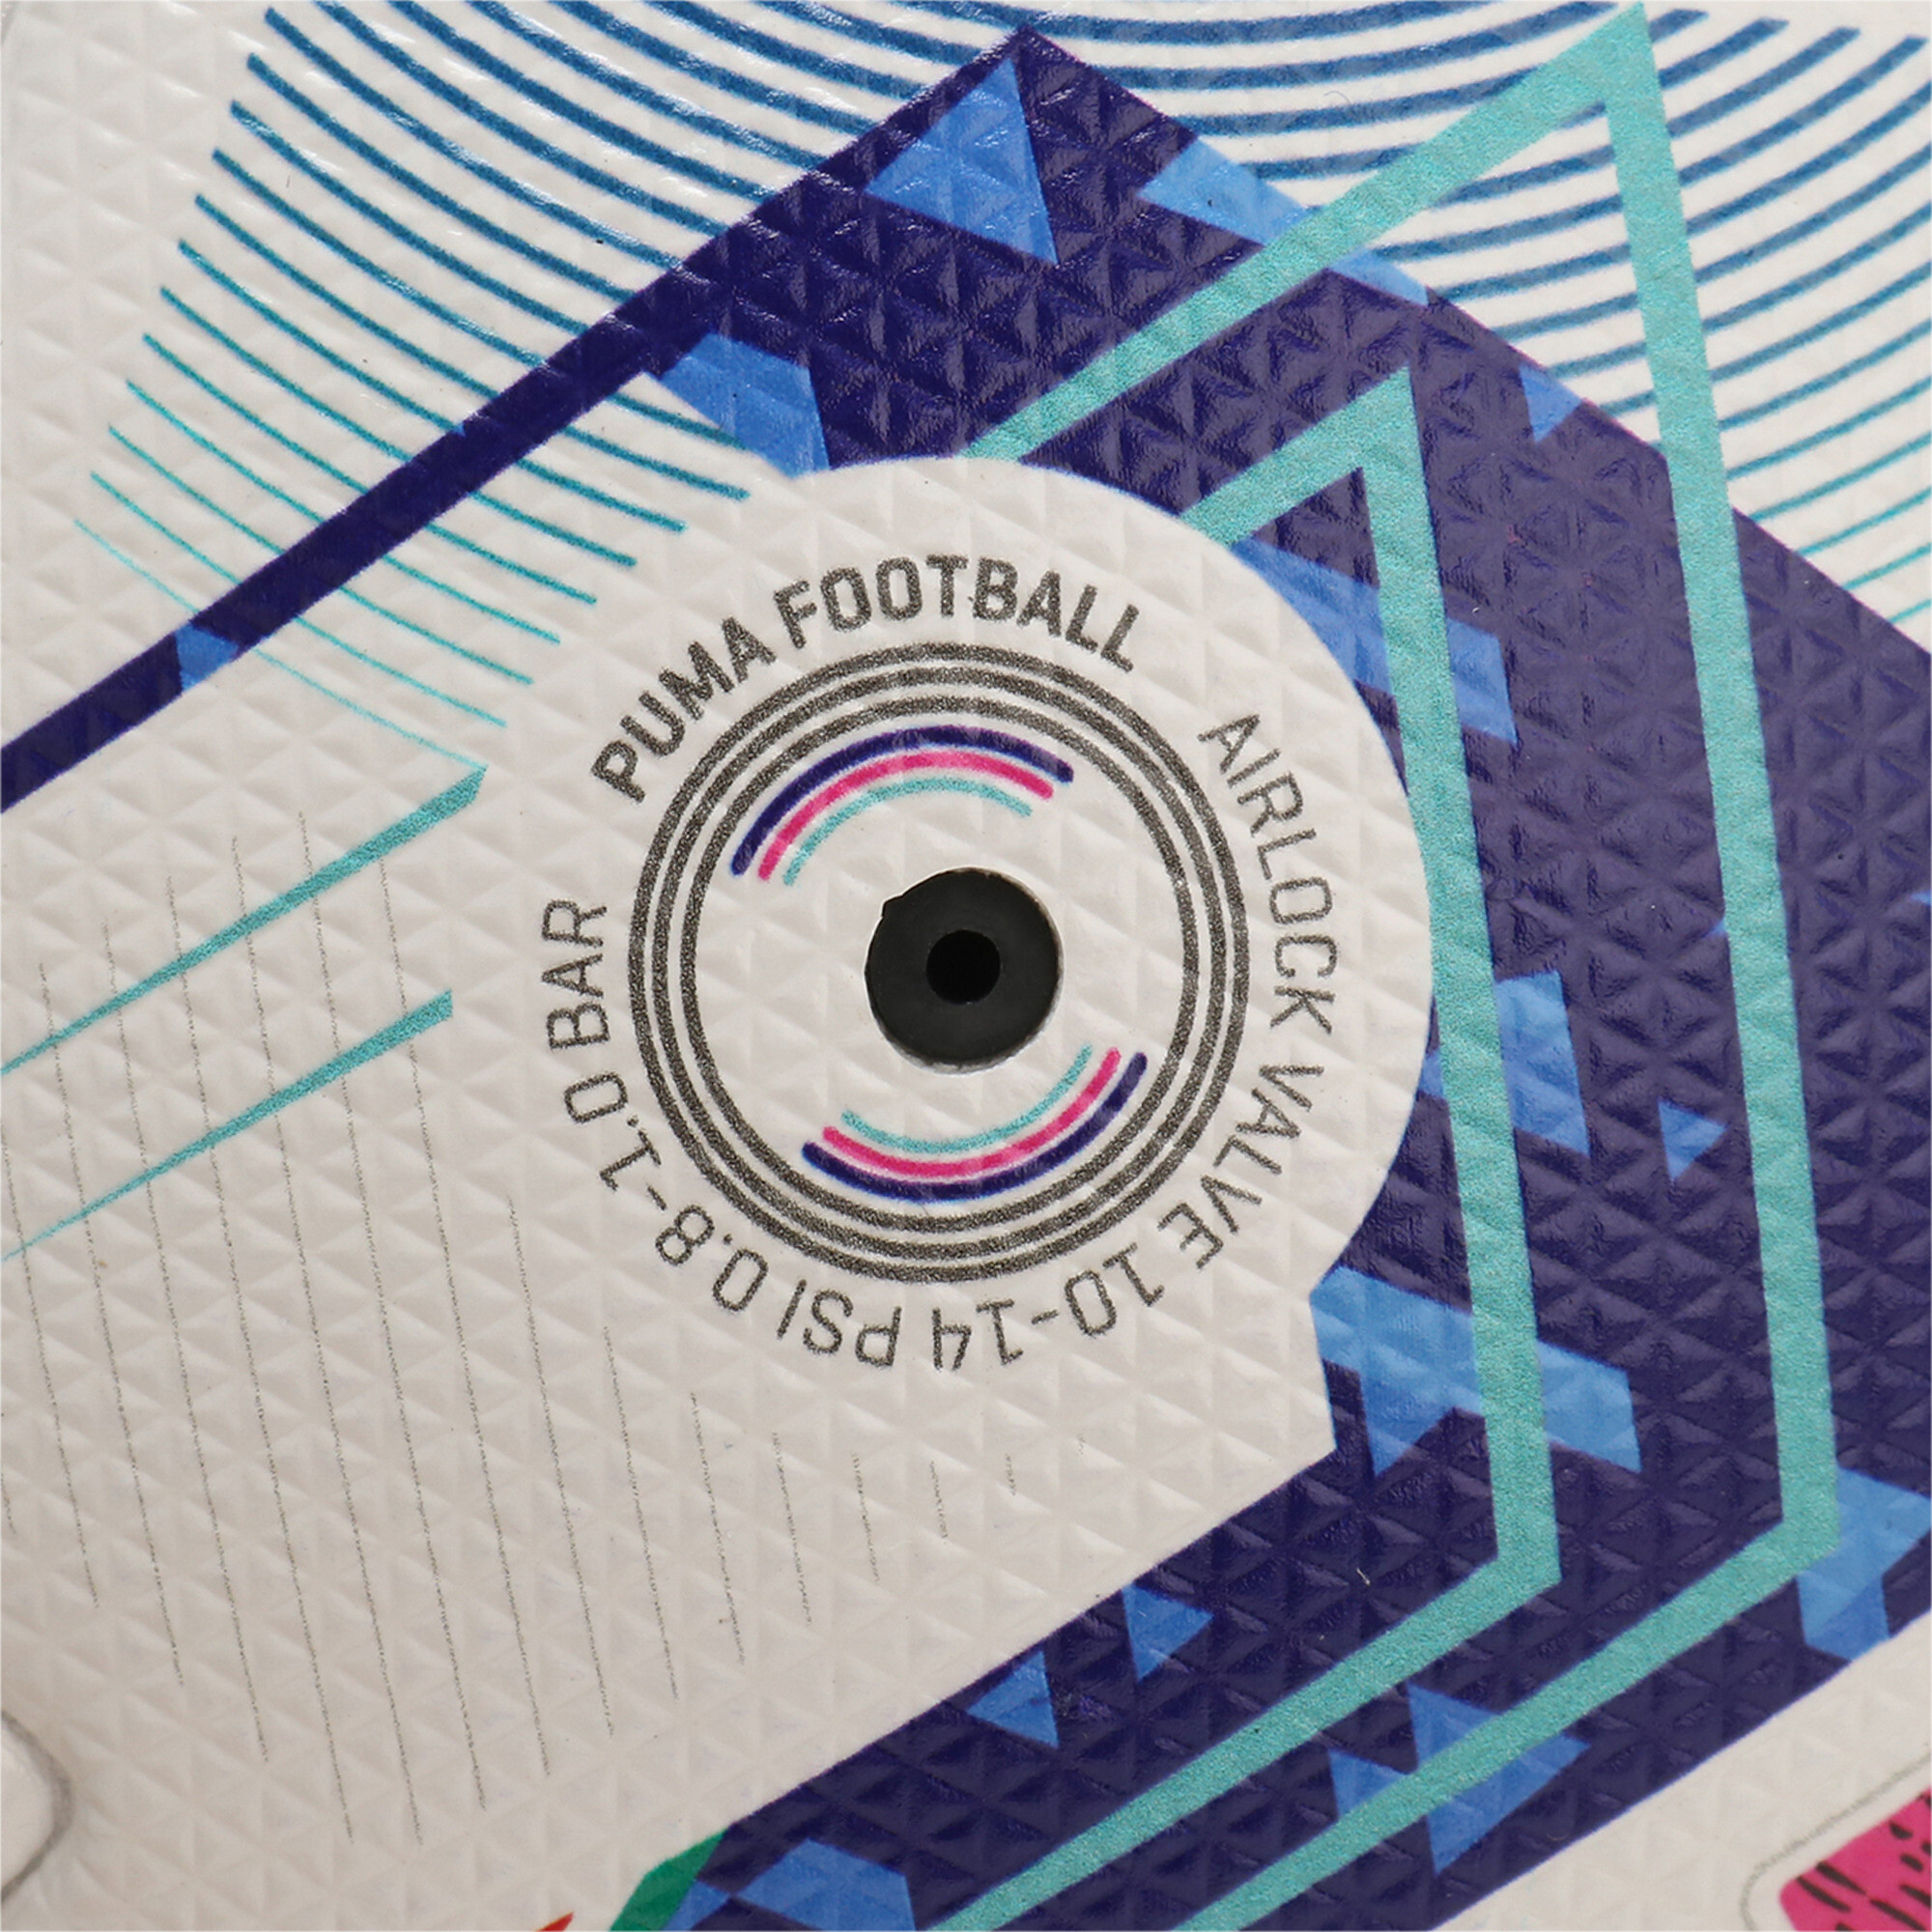 Puma Orbita Serie A Pro Football, White, Size 5, Accessories